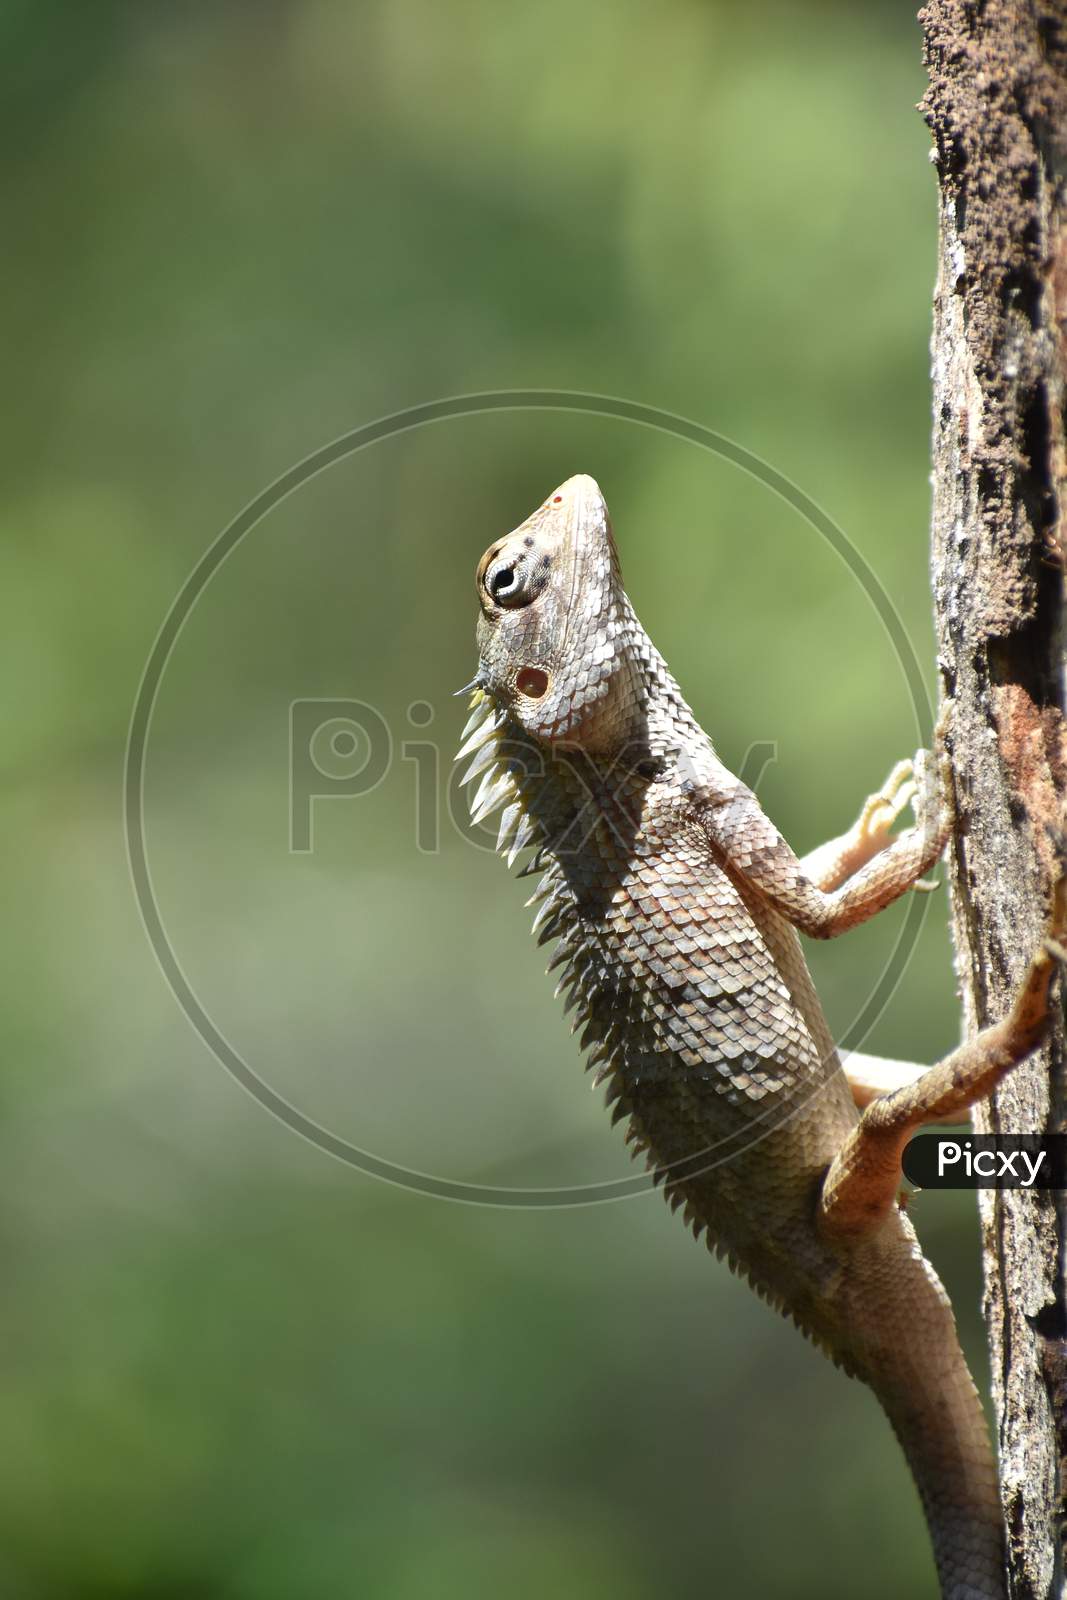 Oriental Garden lizard (Calotes versicolor) on a tree